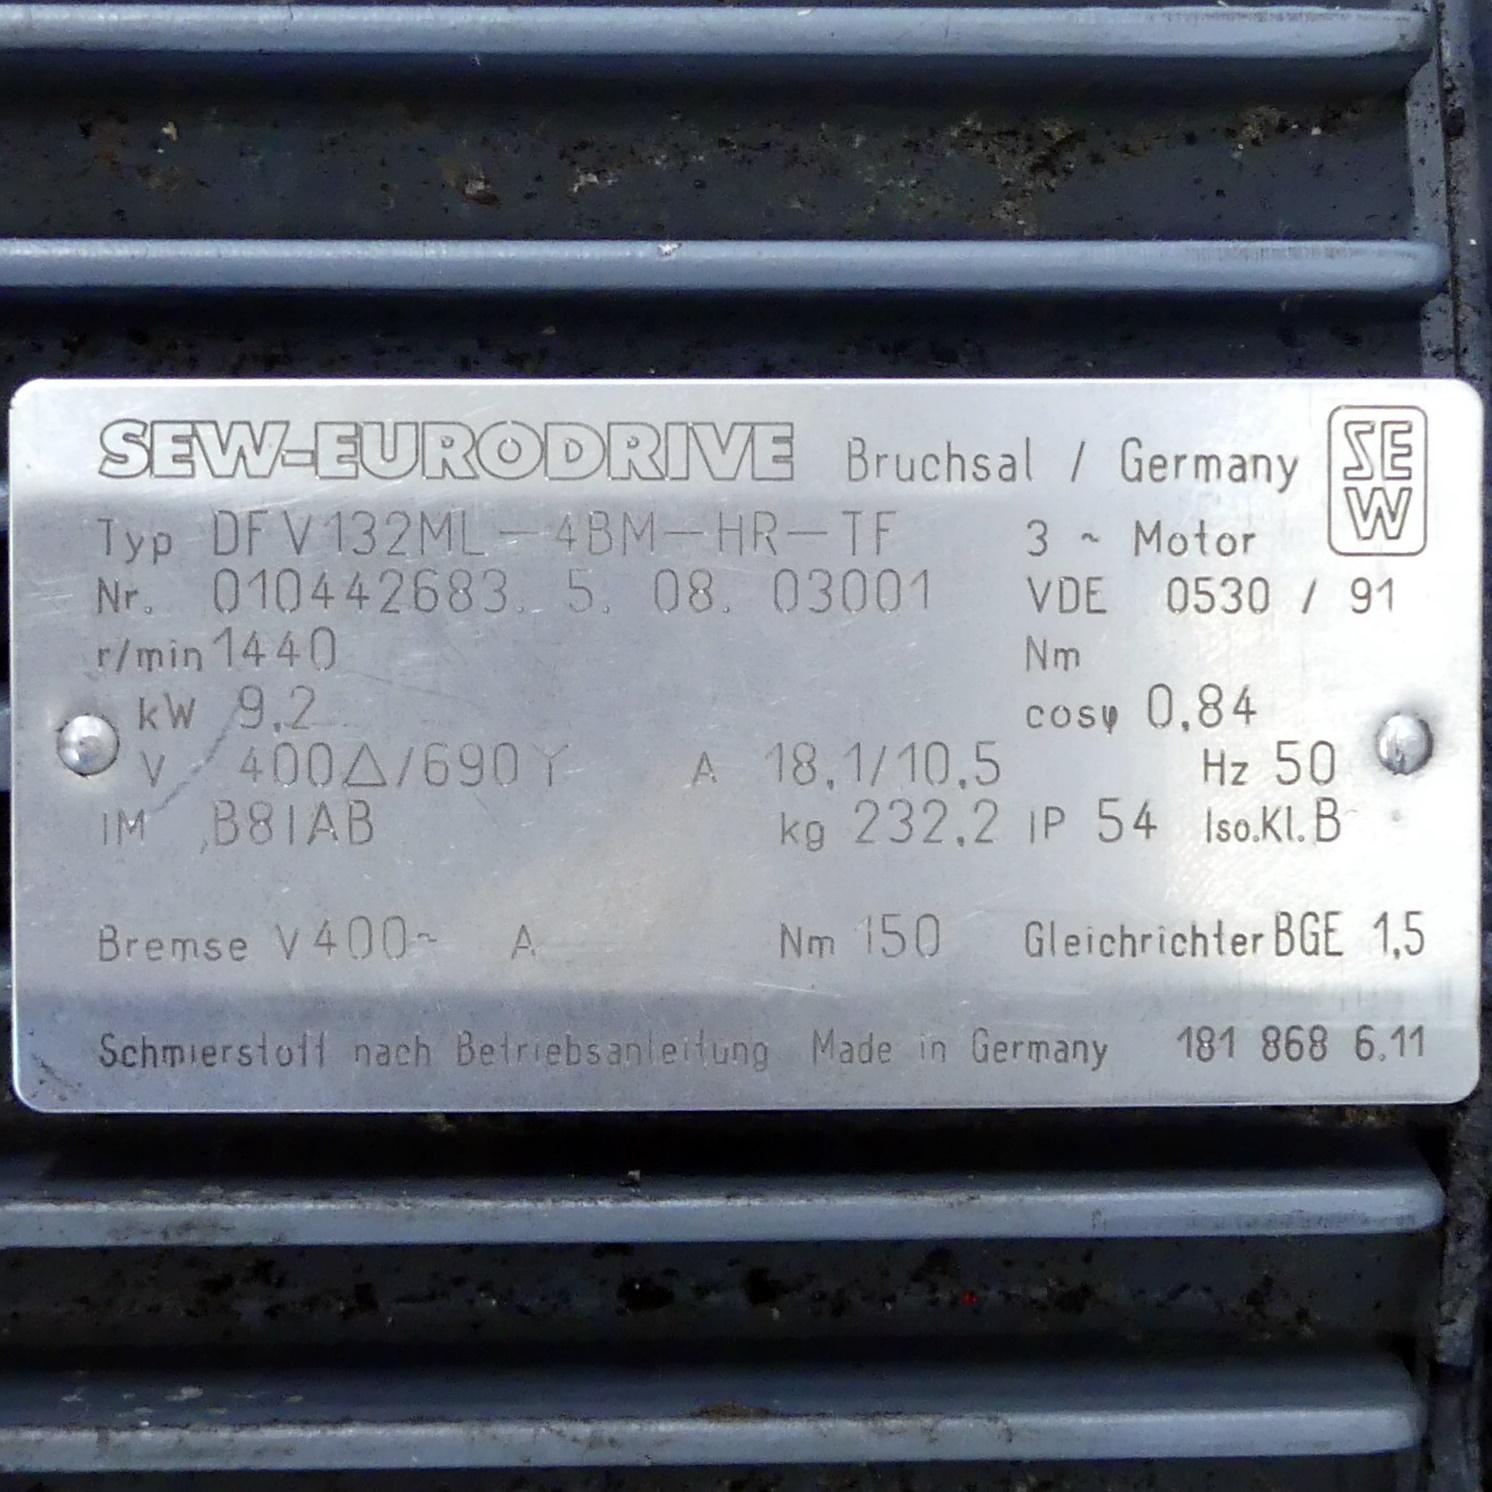 Getriebemotor DFV132ML-4BM-HR-TF 